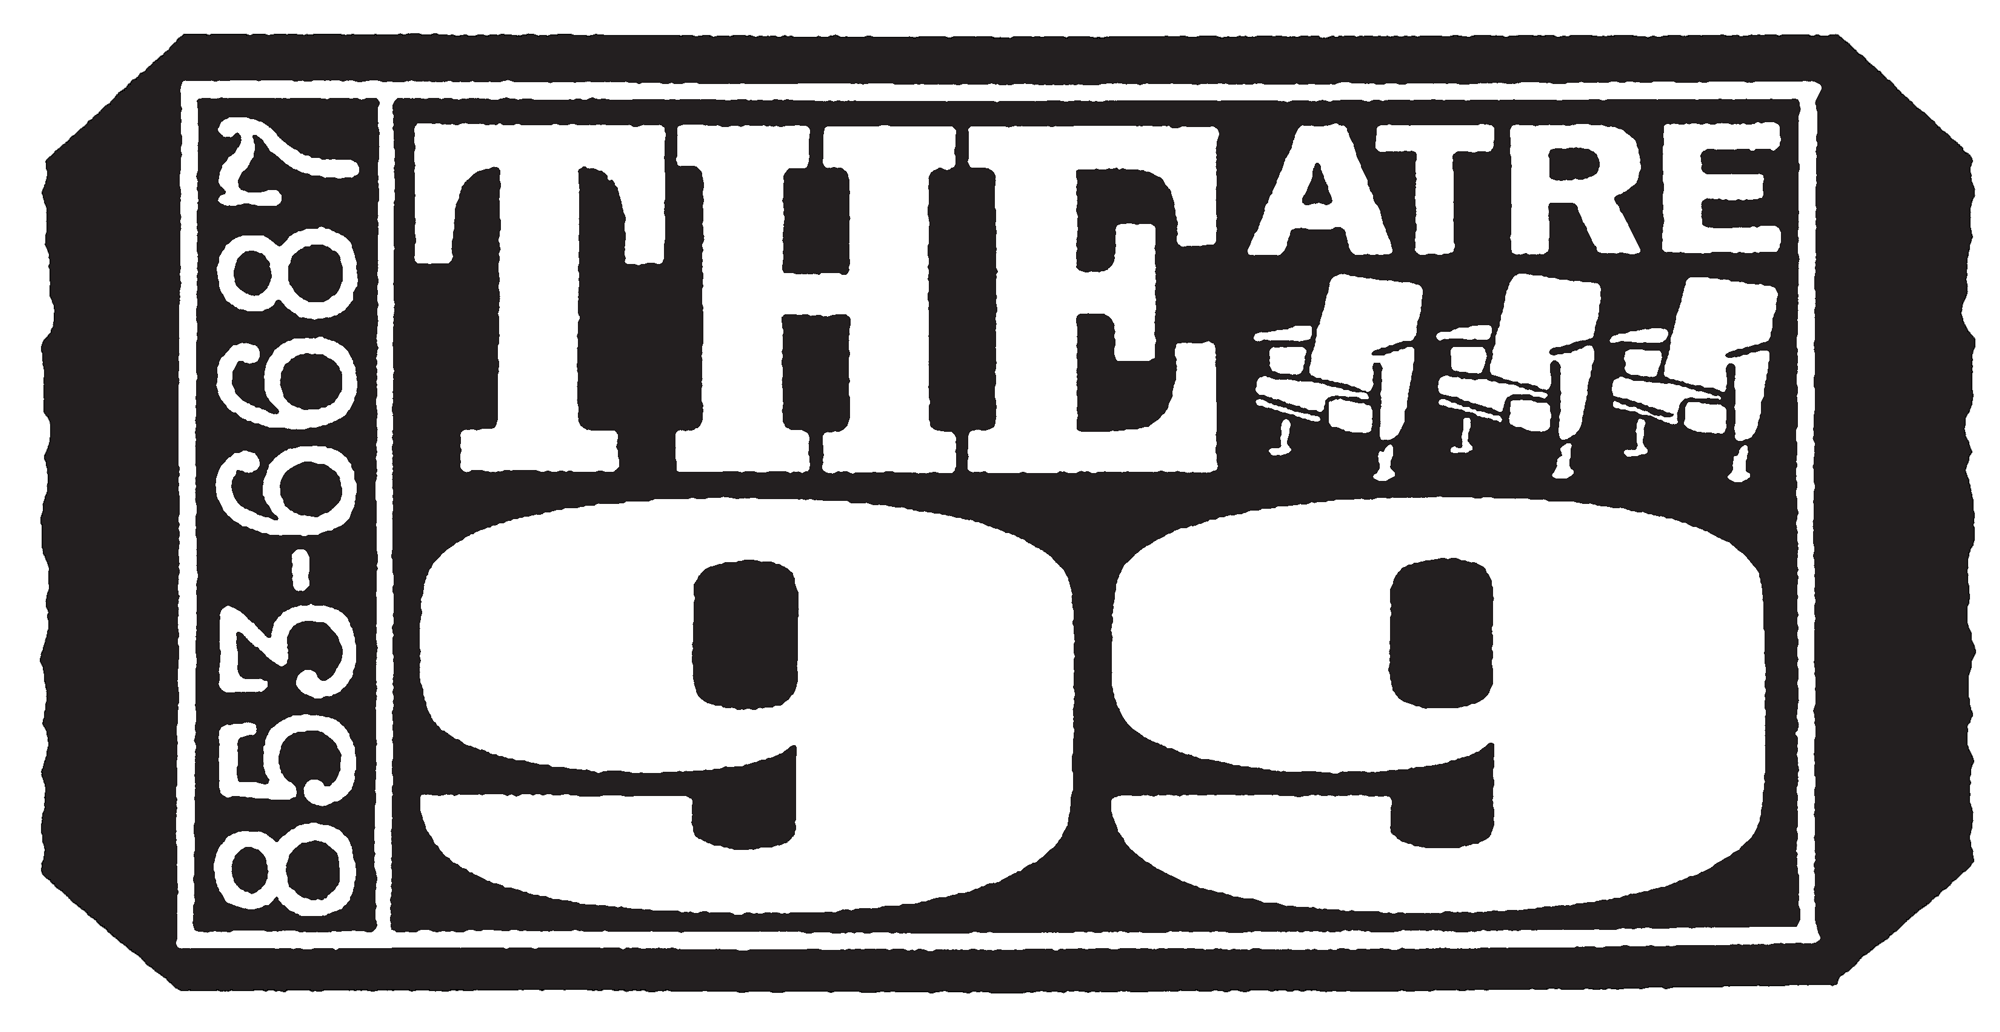 Theatre 99 | Charleston Comedy Improv 